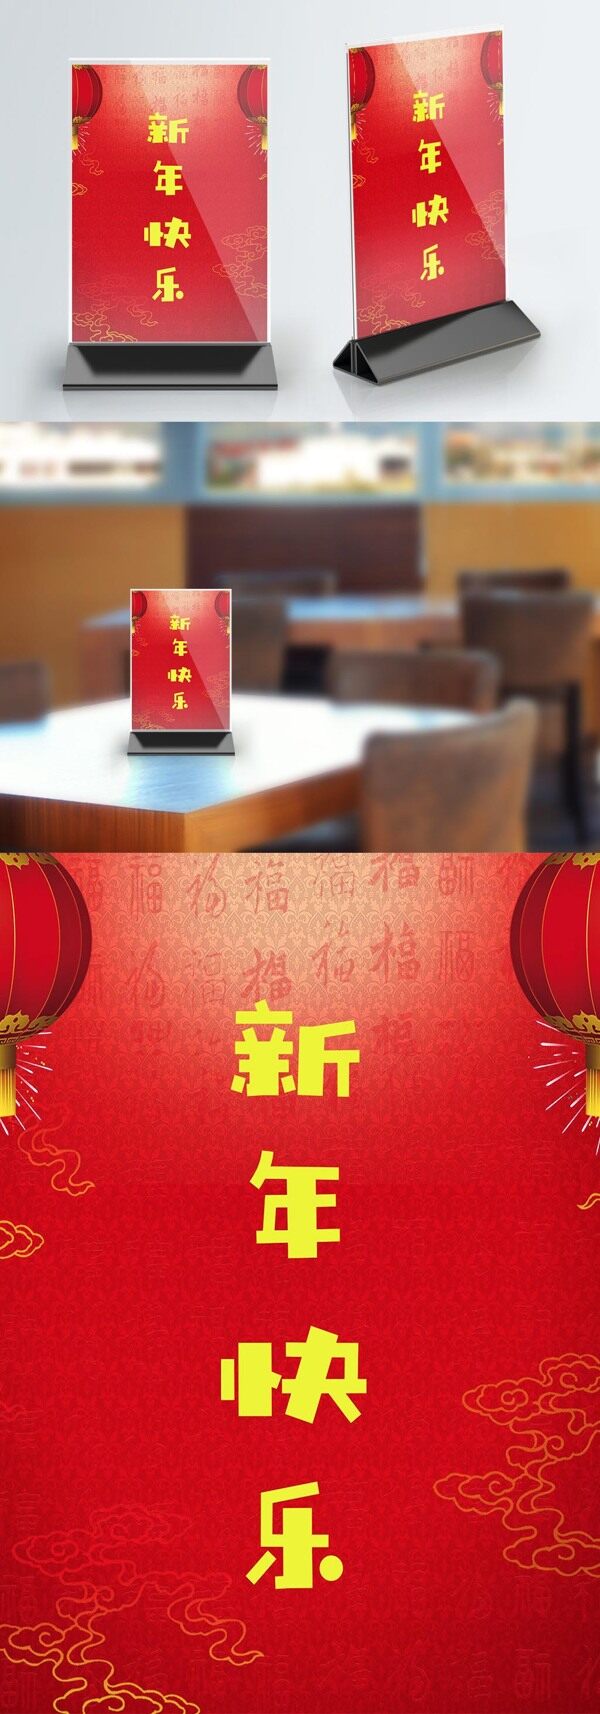 红色简约大气新年快乐桌卡设计